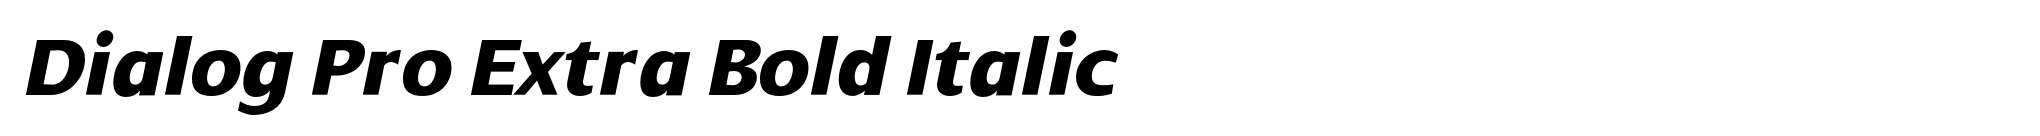 Dialog Pro Extra Bold Italic image